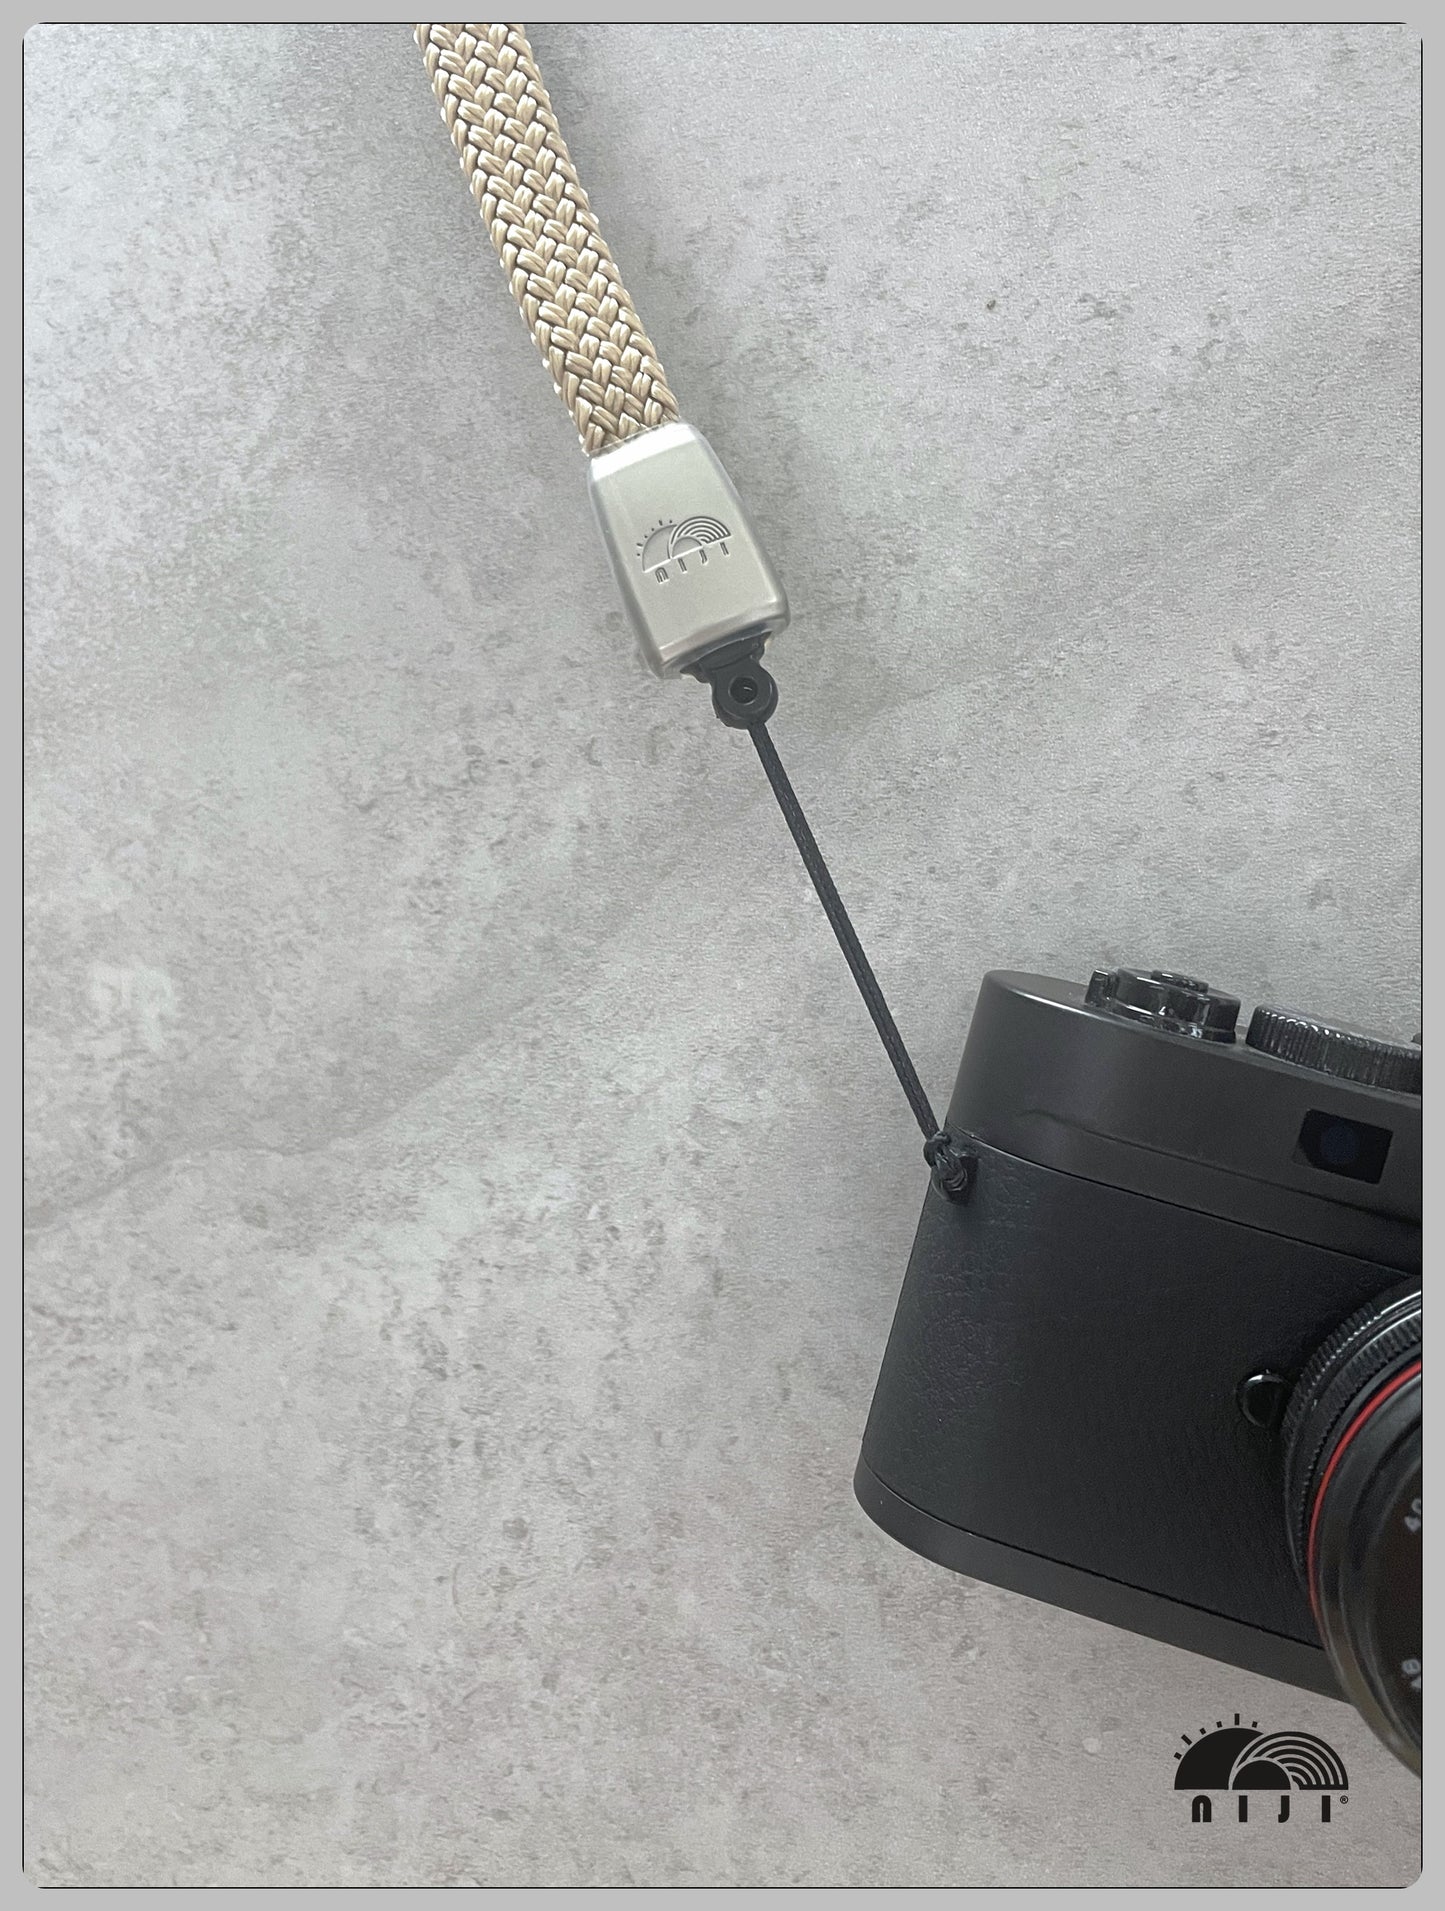 "新入荷" 14mm coreless mobile / camera strap Beige color